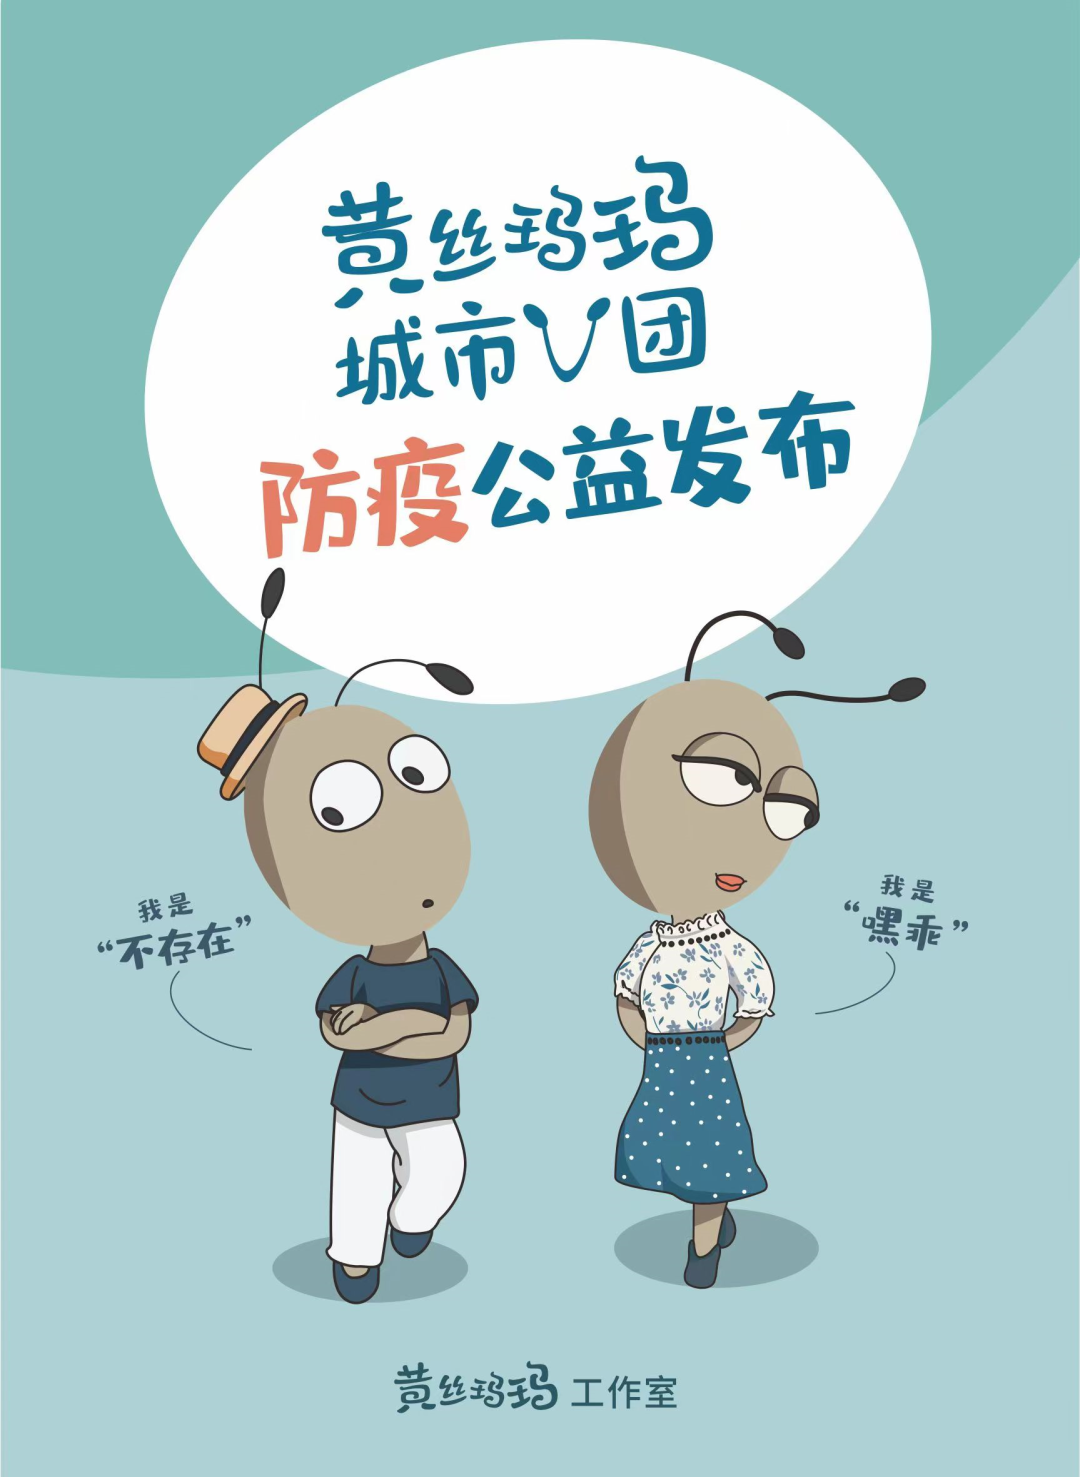 重庆市巫山县报告1例新冠肺炎确诊病例，系市外途经重庆返乡人员